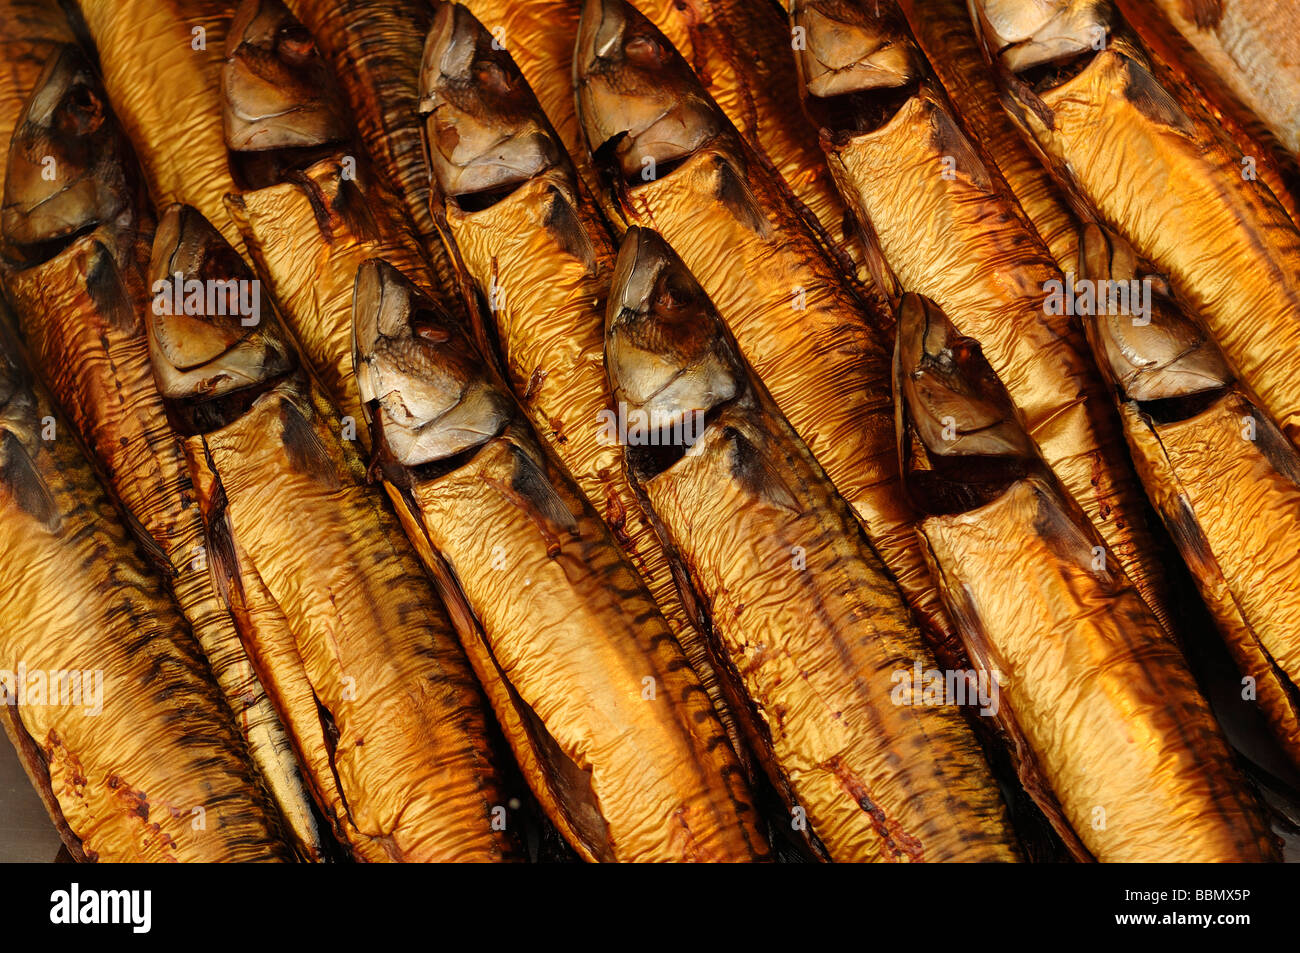 Geräucherte Makrele (Scomber Scombrus) in einem Fisch-Shop, Lüneburg, Niedersachsen, Deutschland, Europa Stockfoto